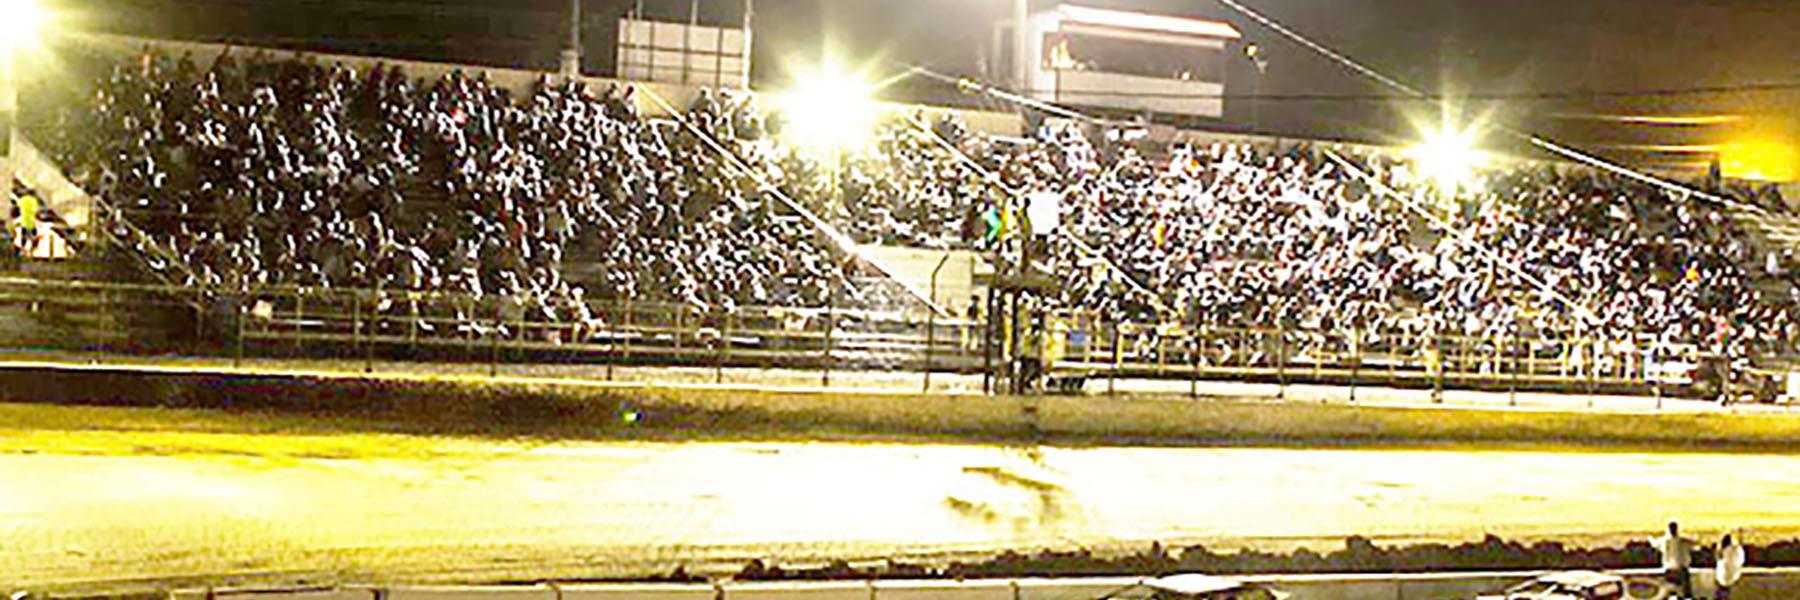 9/17/2022 - Tri-State Speedway